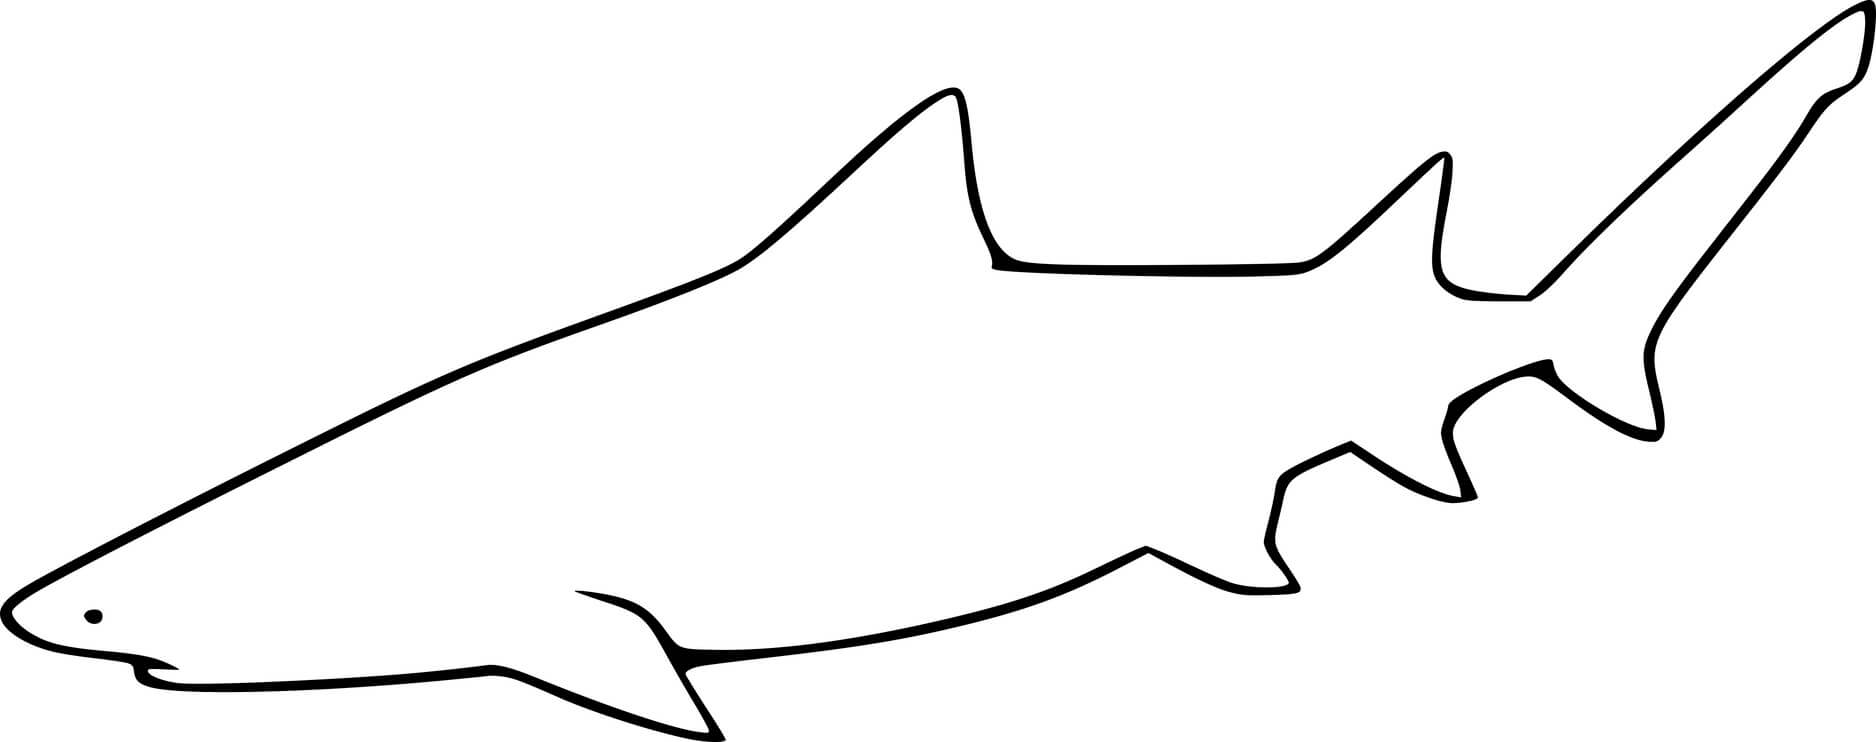 Lemon Shark Outline